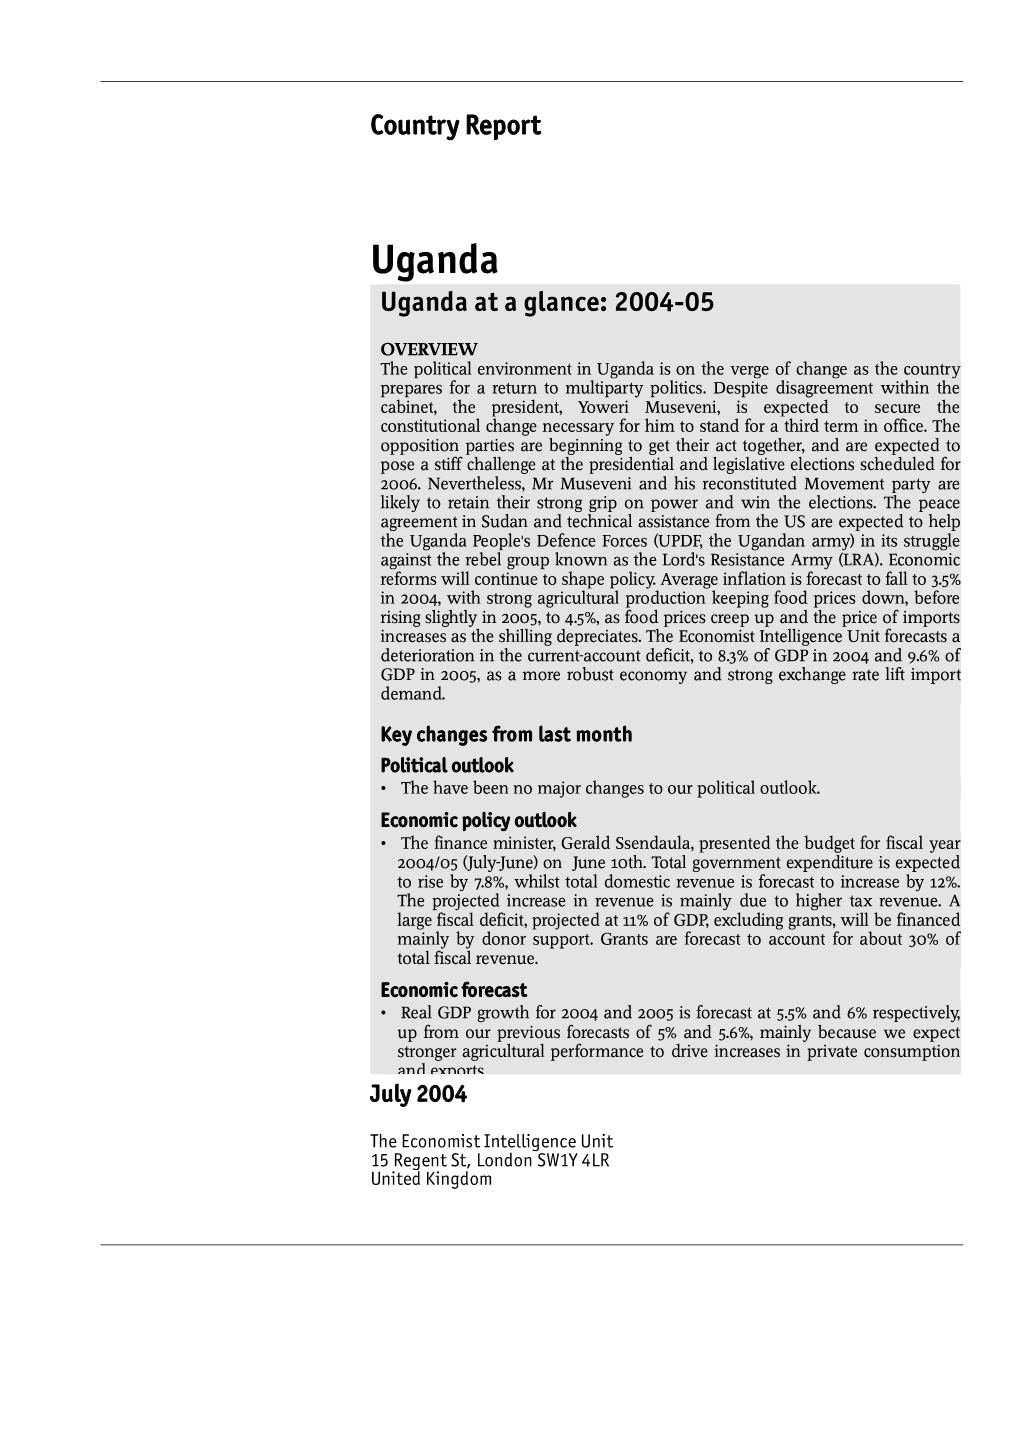 Uganda Uganda at a Glance: 2004-05